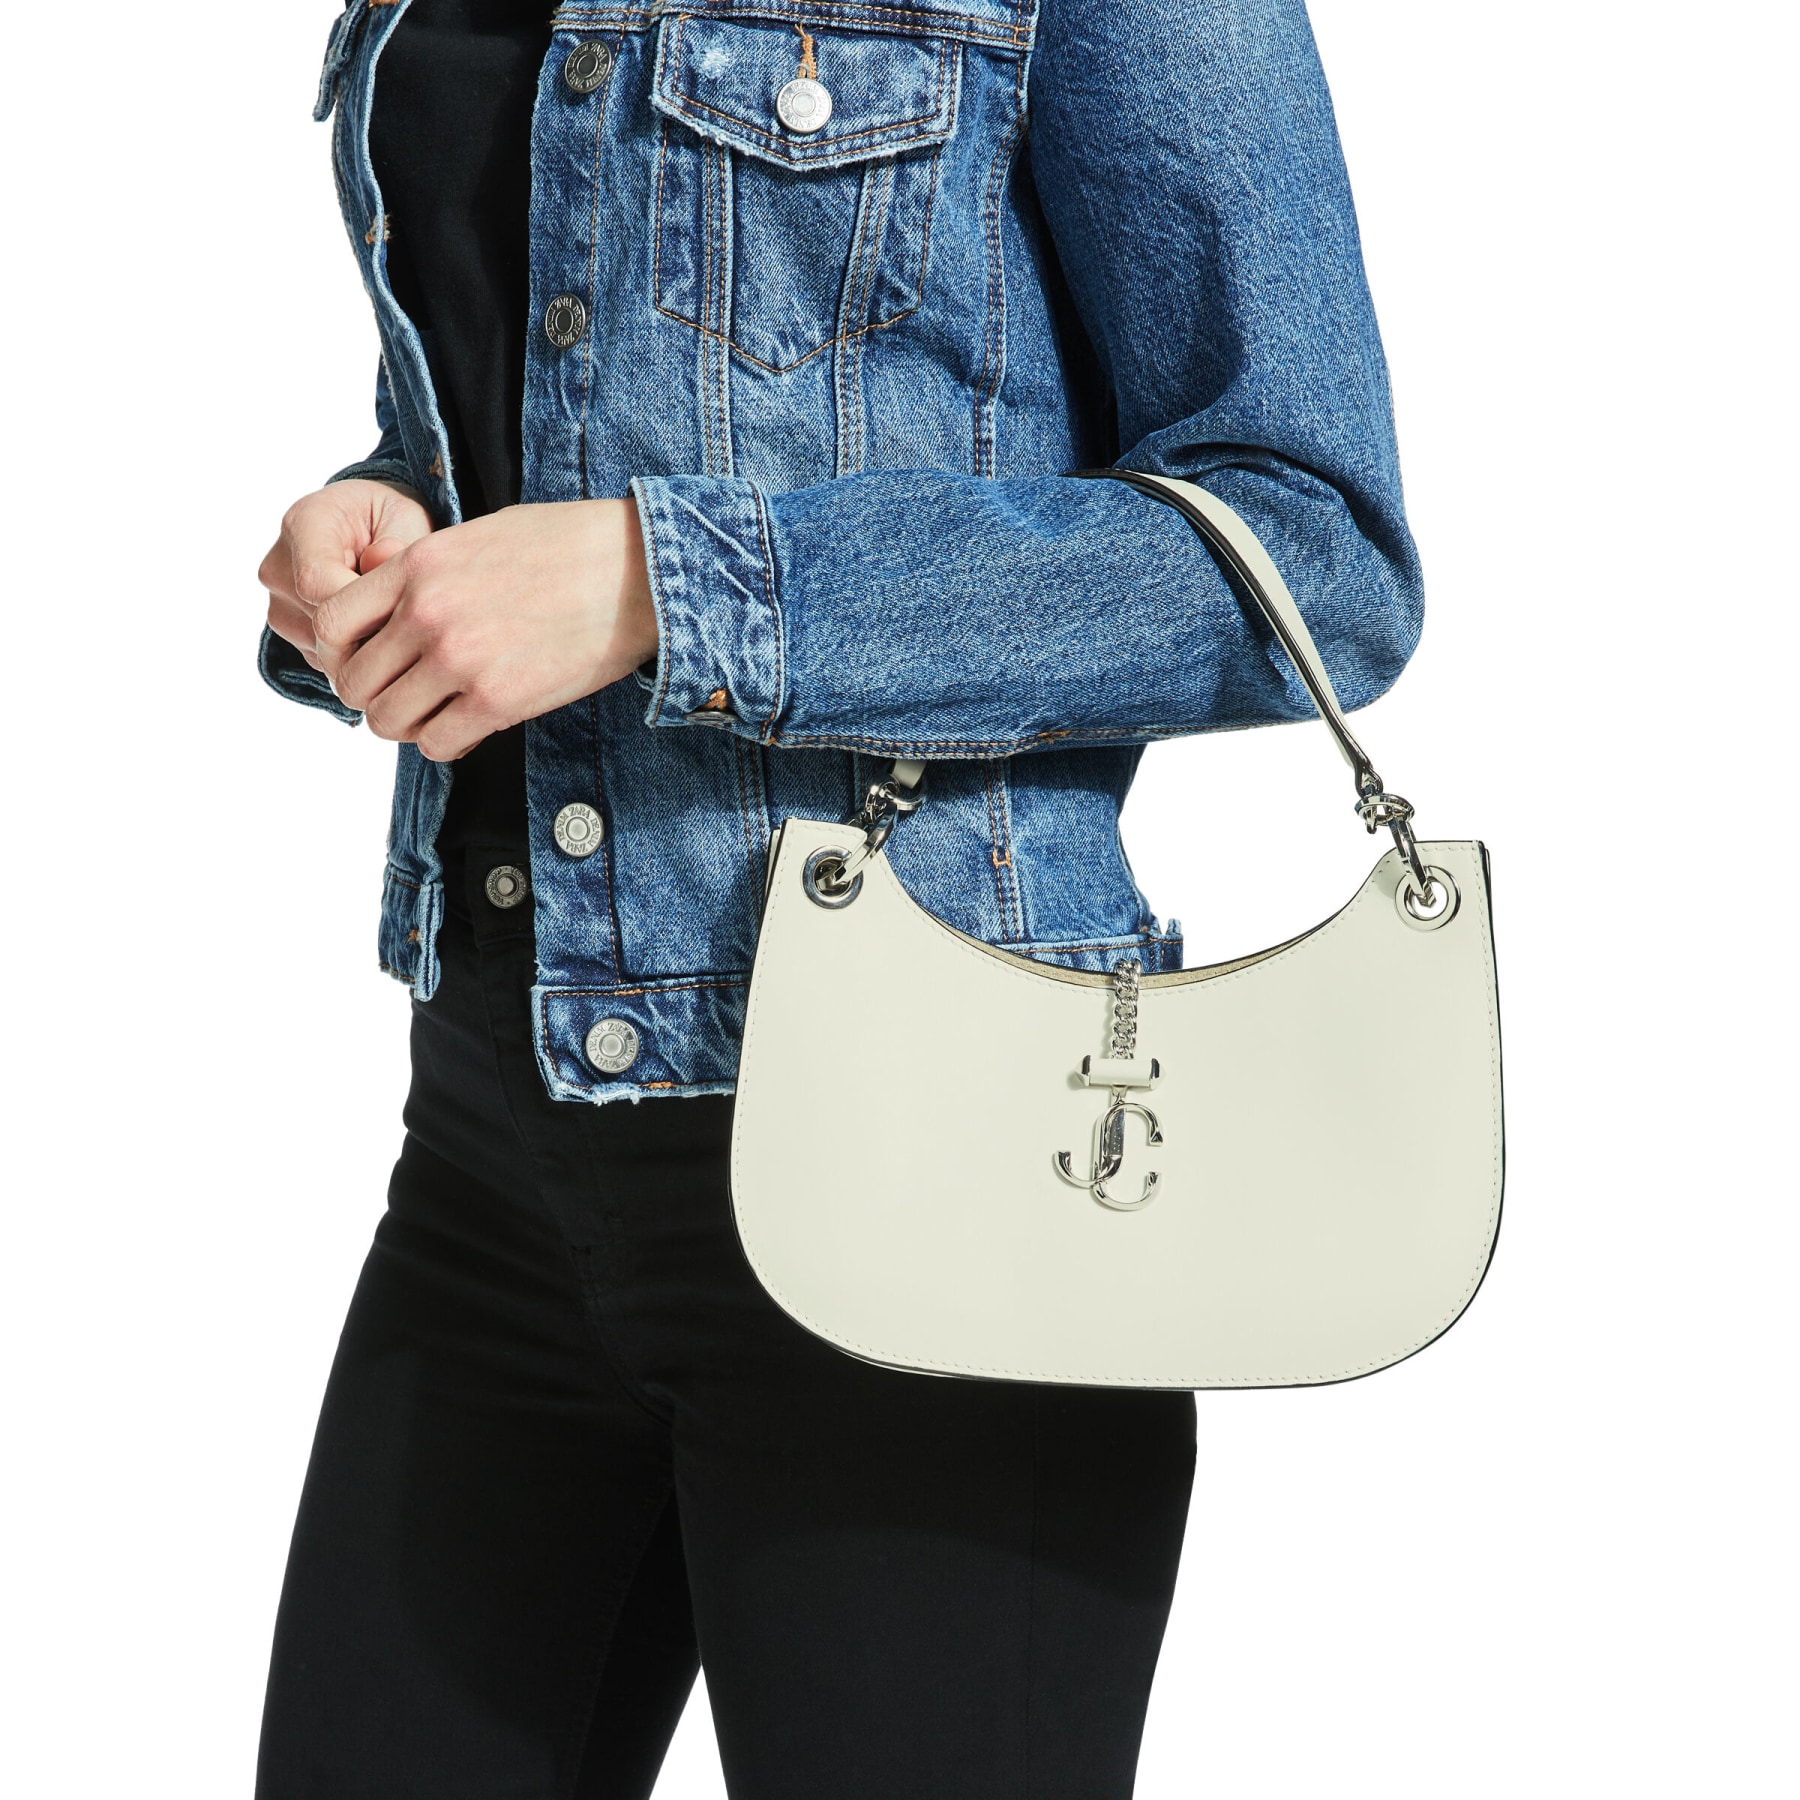 Latte Calf Leather Hobo Handbag | VARENNE HOBO/S | Pre-Fall '20 